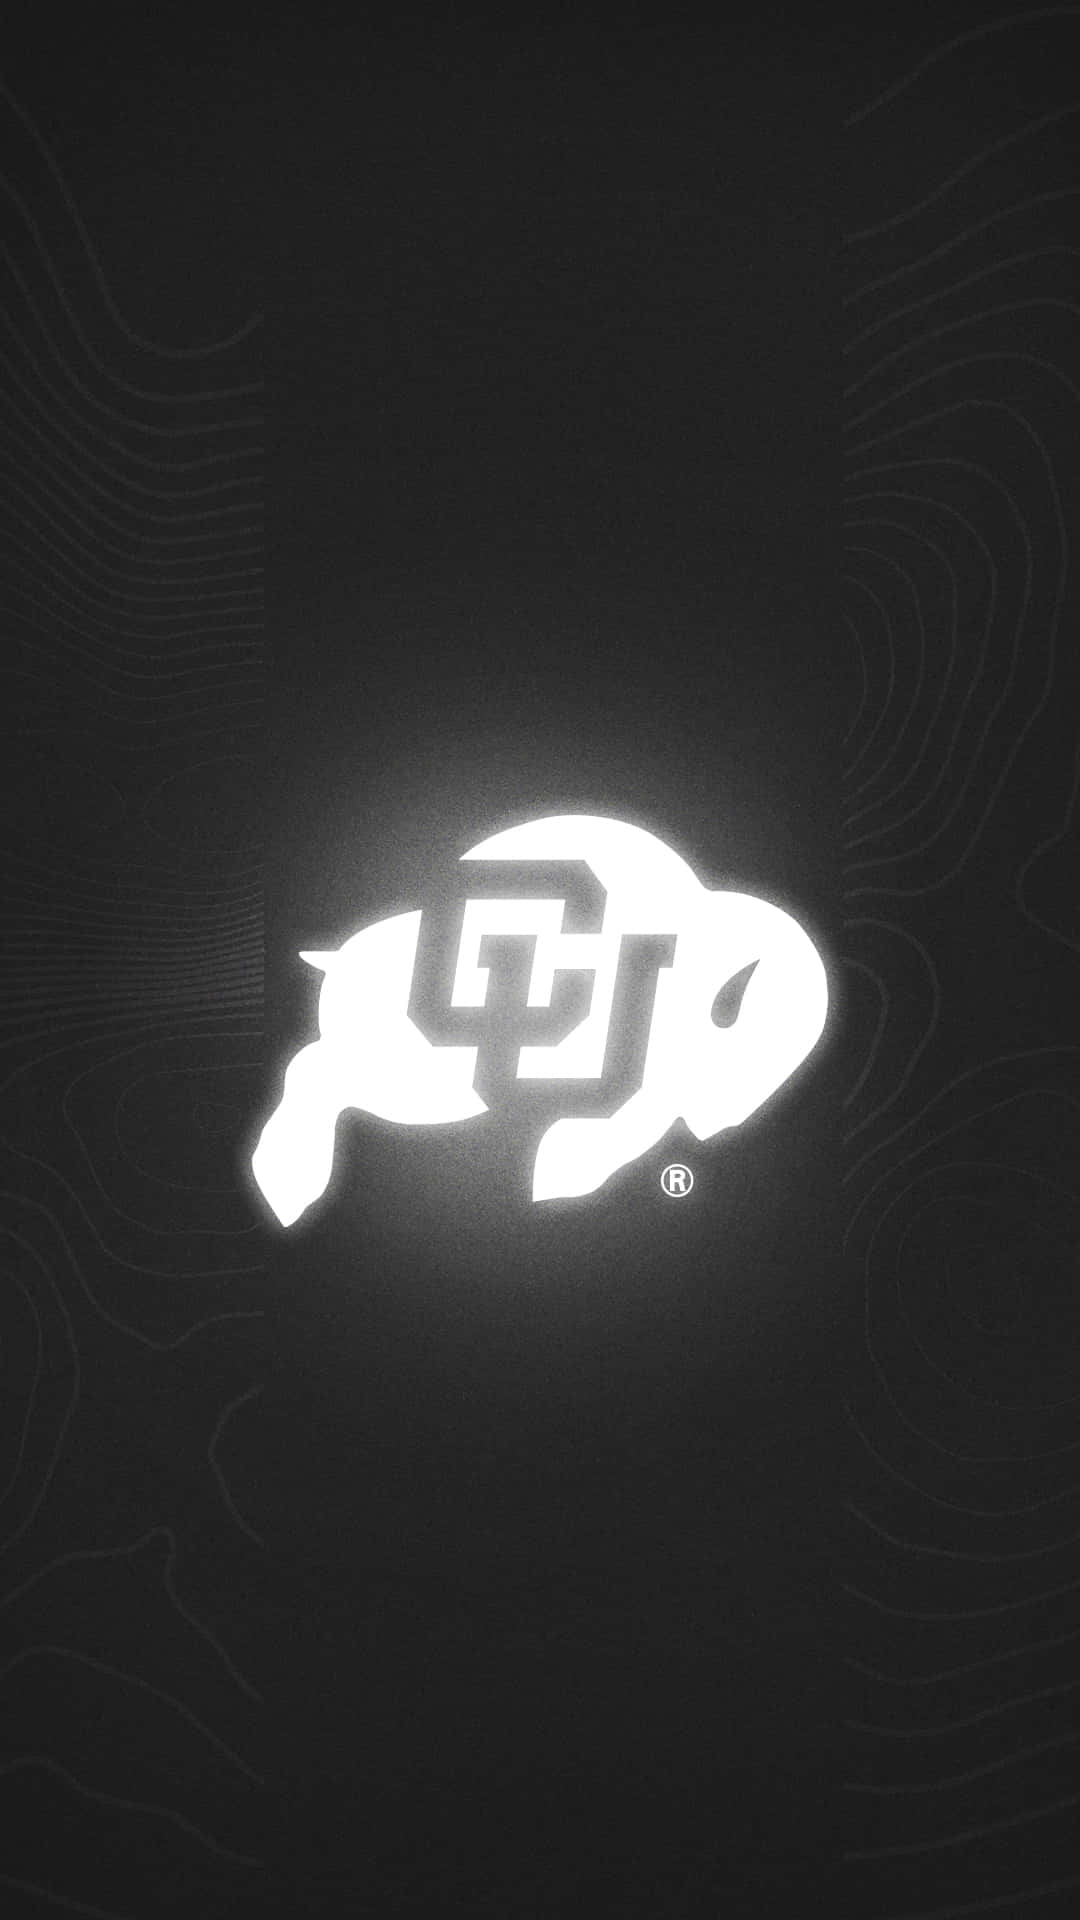 Colorado Buffaloes Logo Blackand White Wallpaper